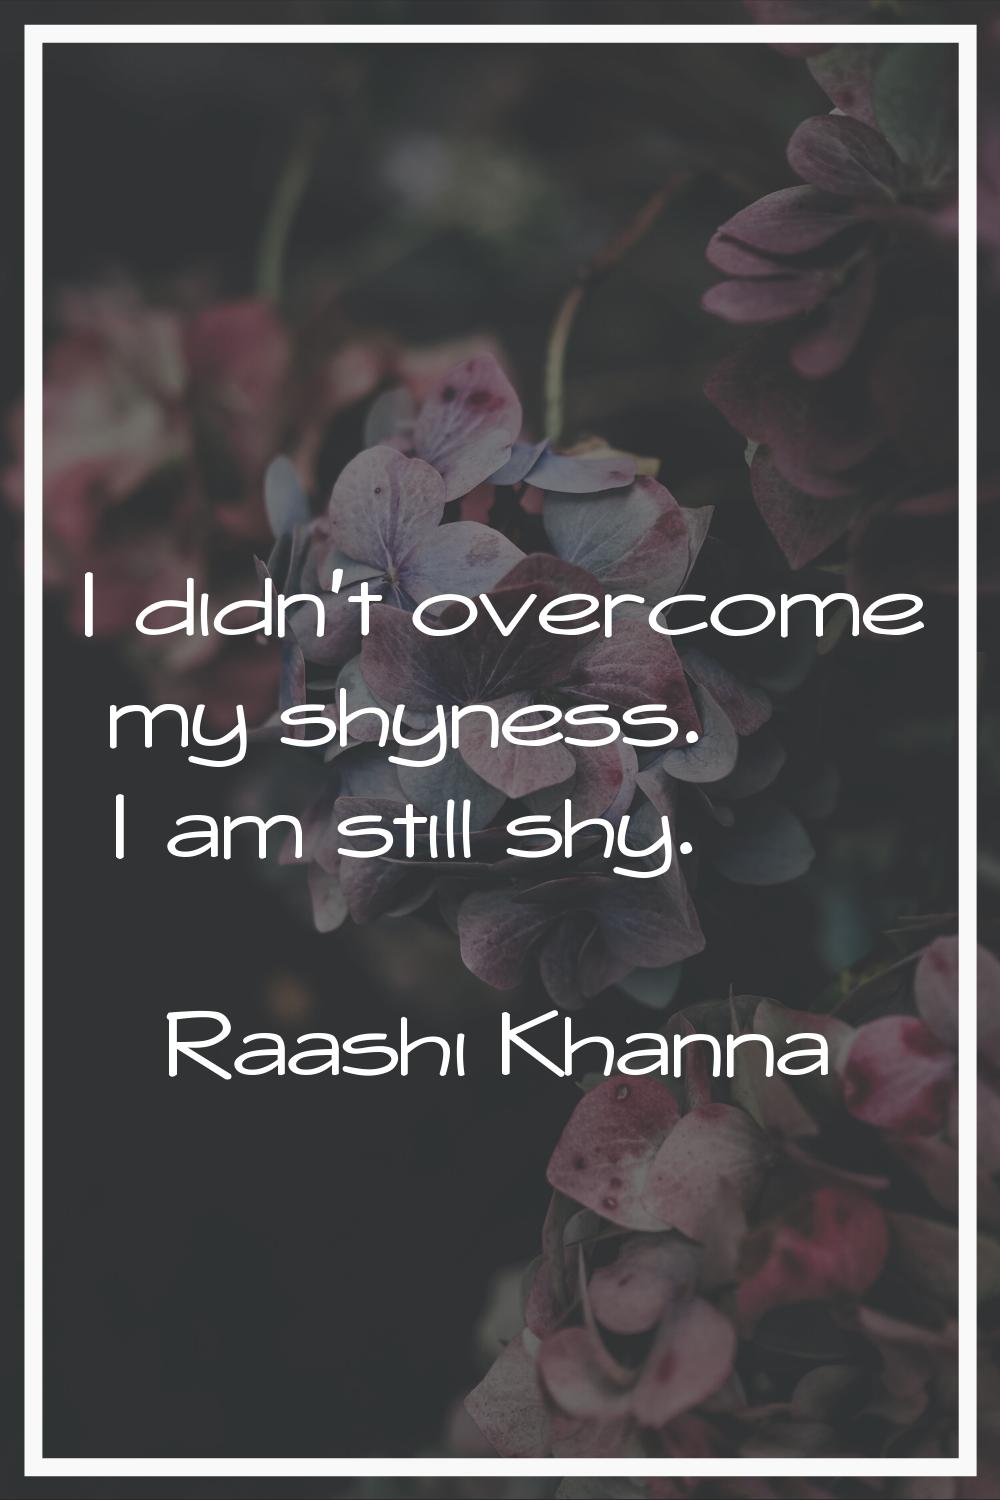 I didn't overcome my shyness. I am still shy.